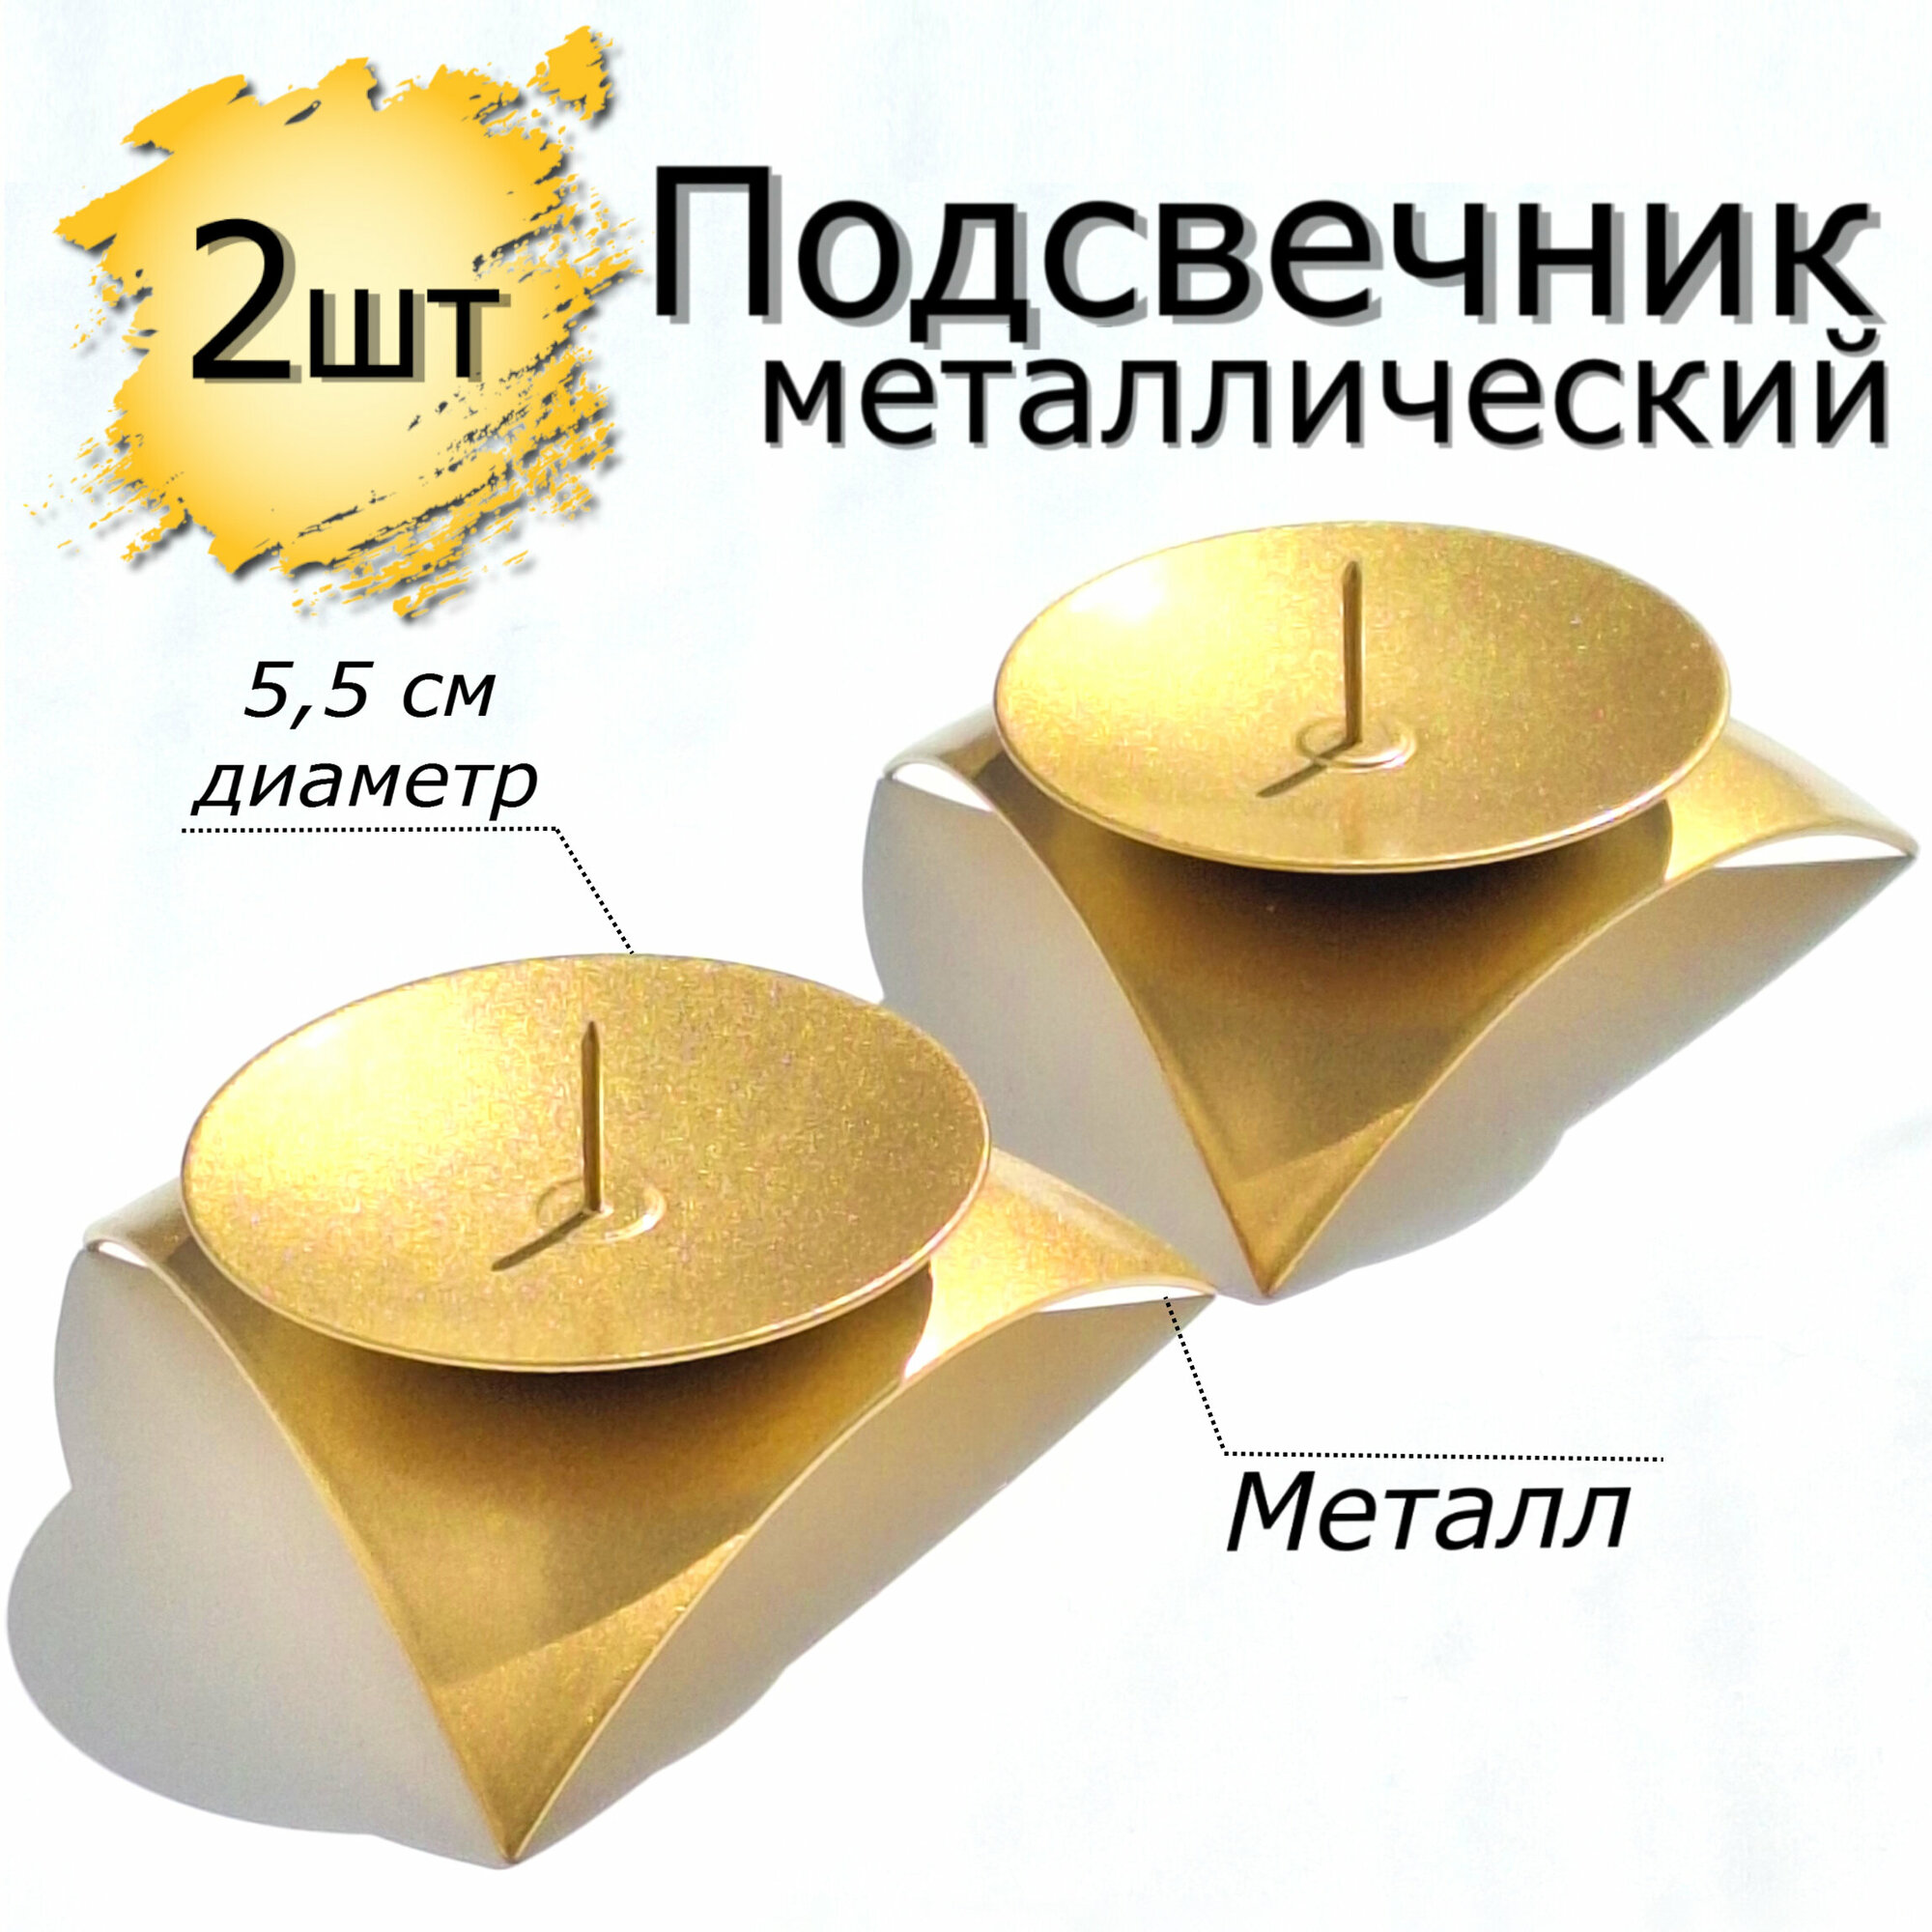 Подсвечник металлический звездочка 2 шт золотистый